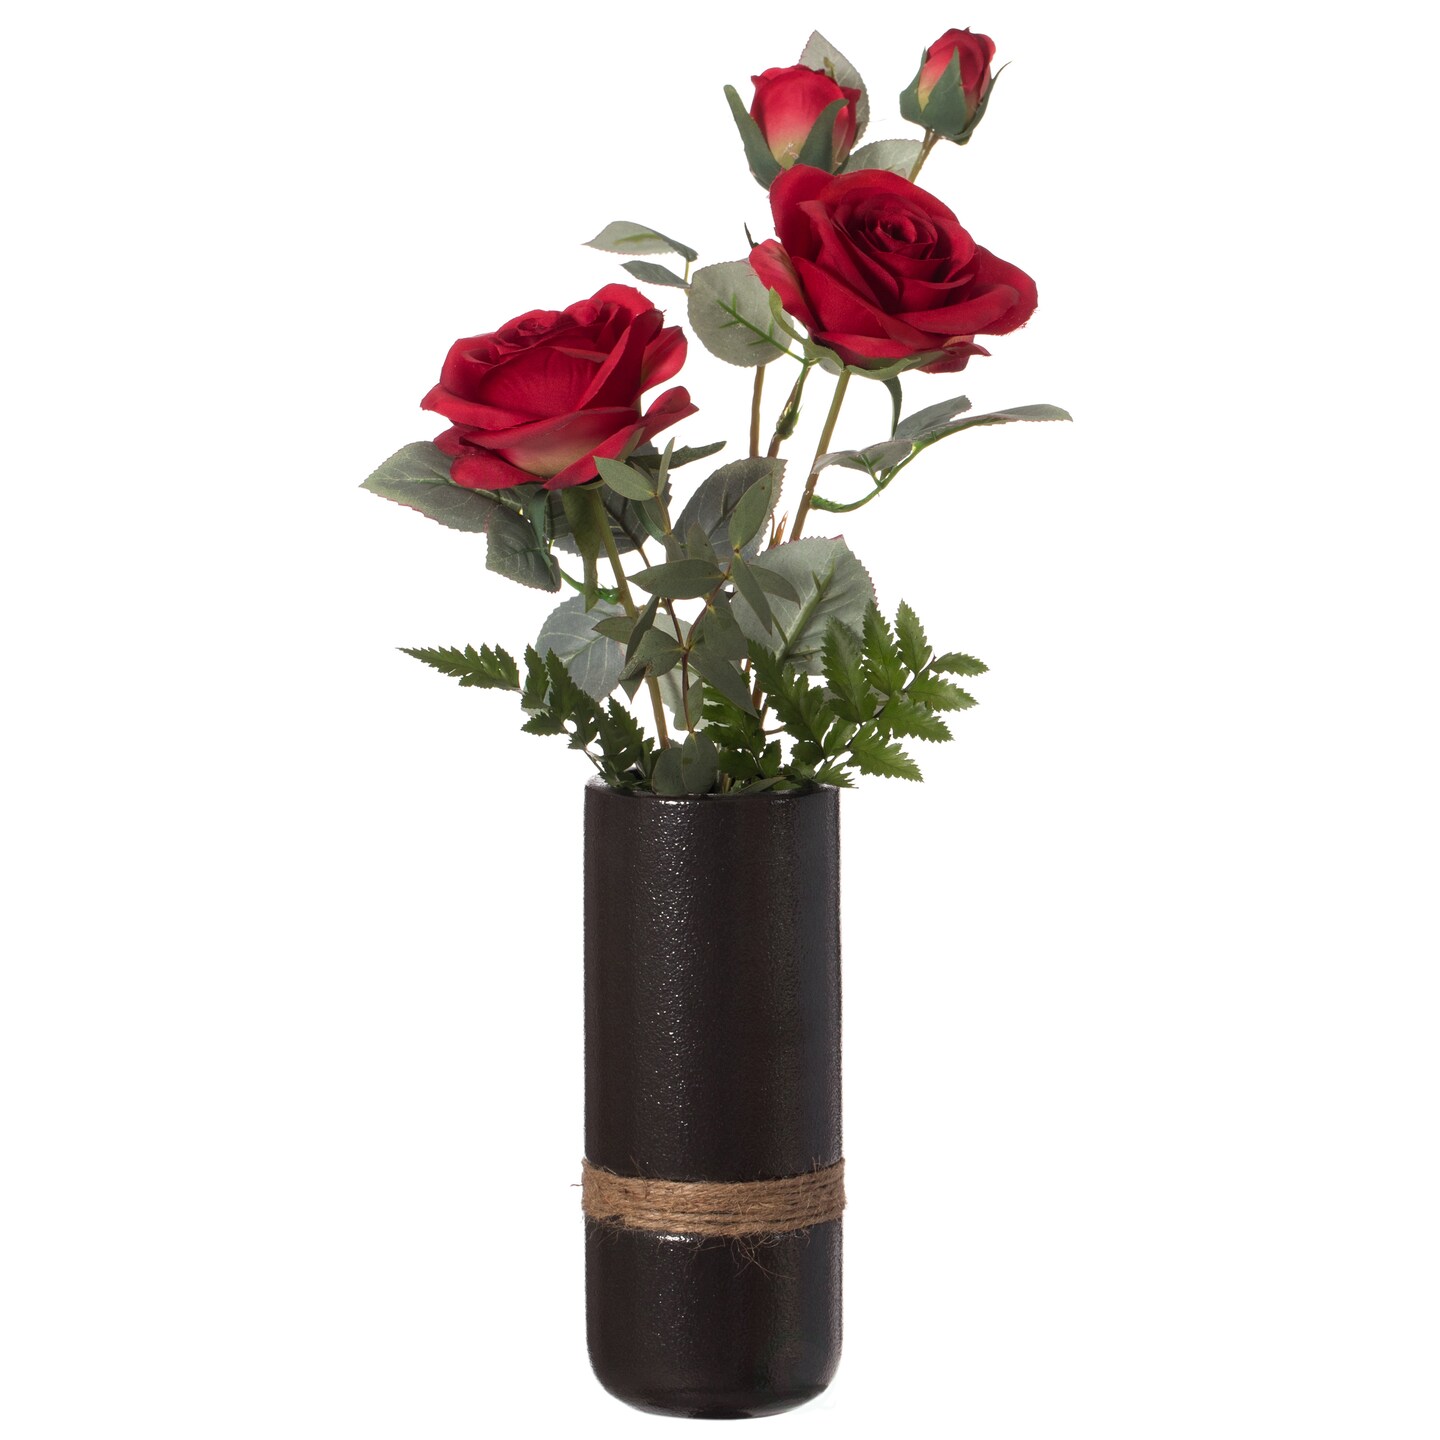 Decorative Modern Ceramic Cylinder Shape Table Vase Flower Holder with Rope